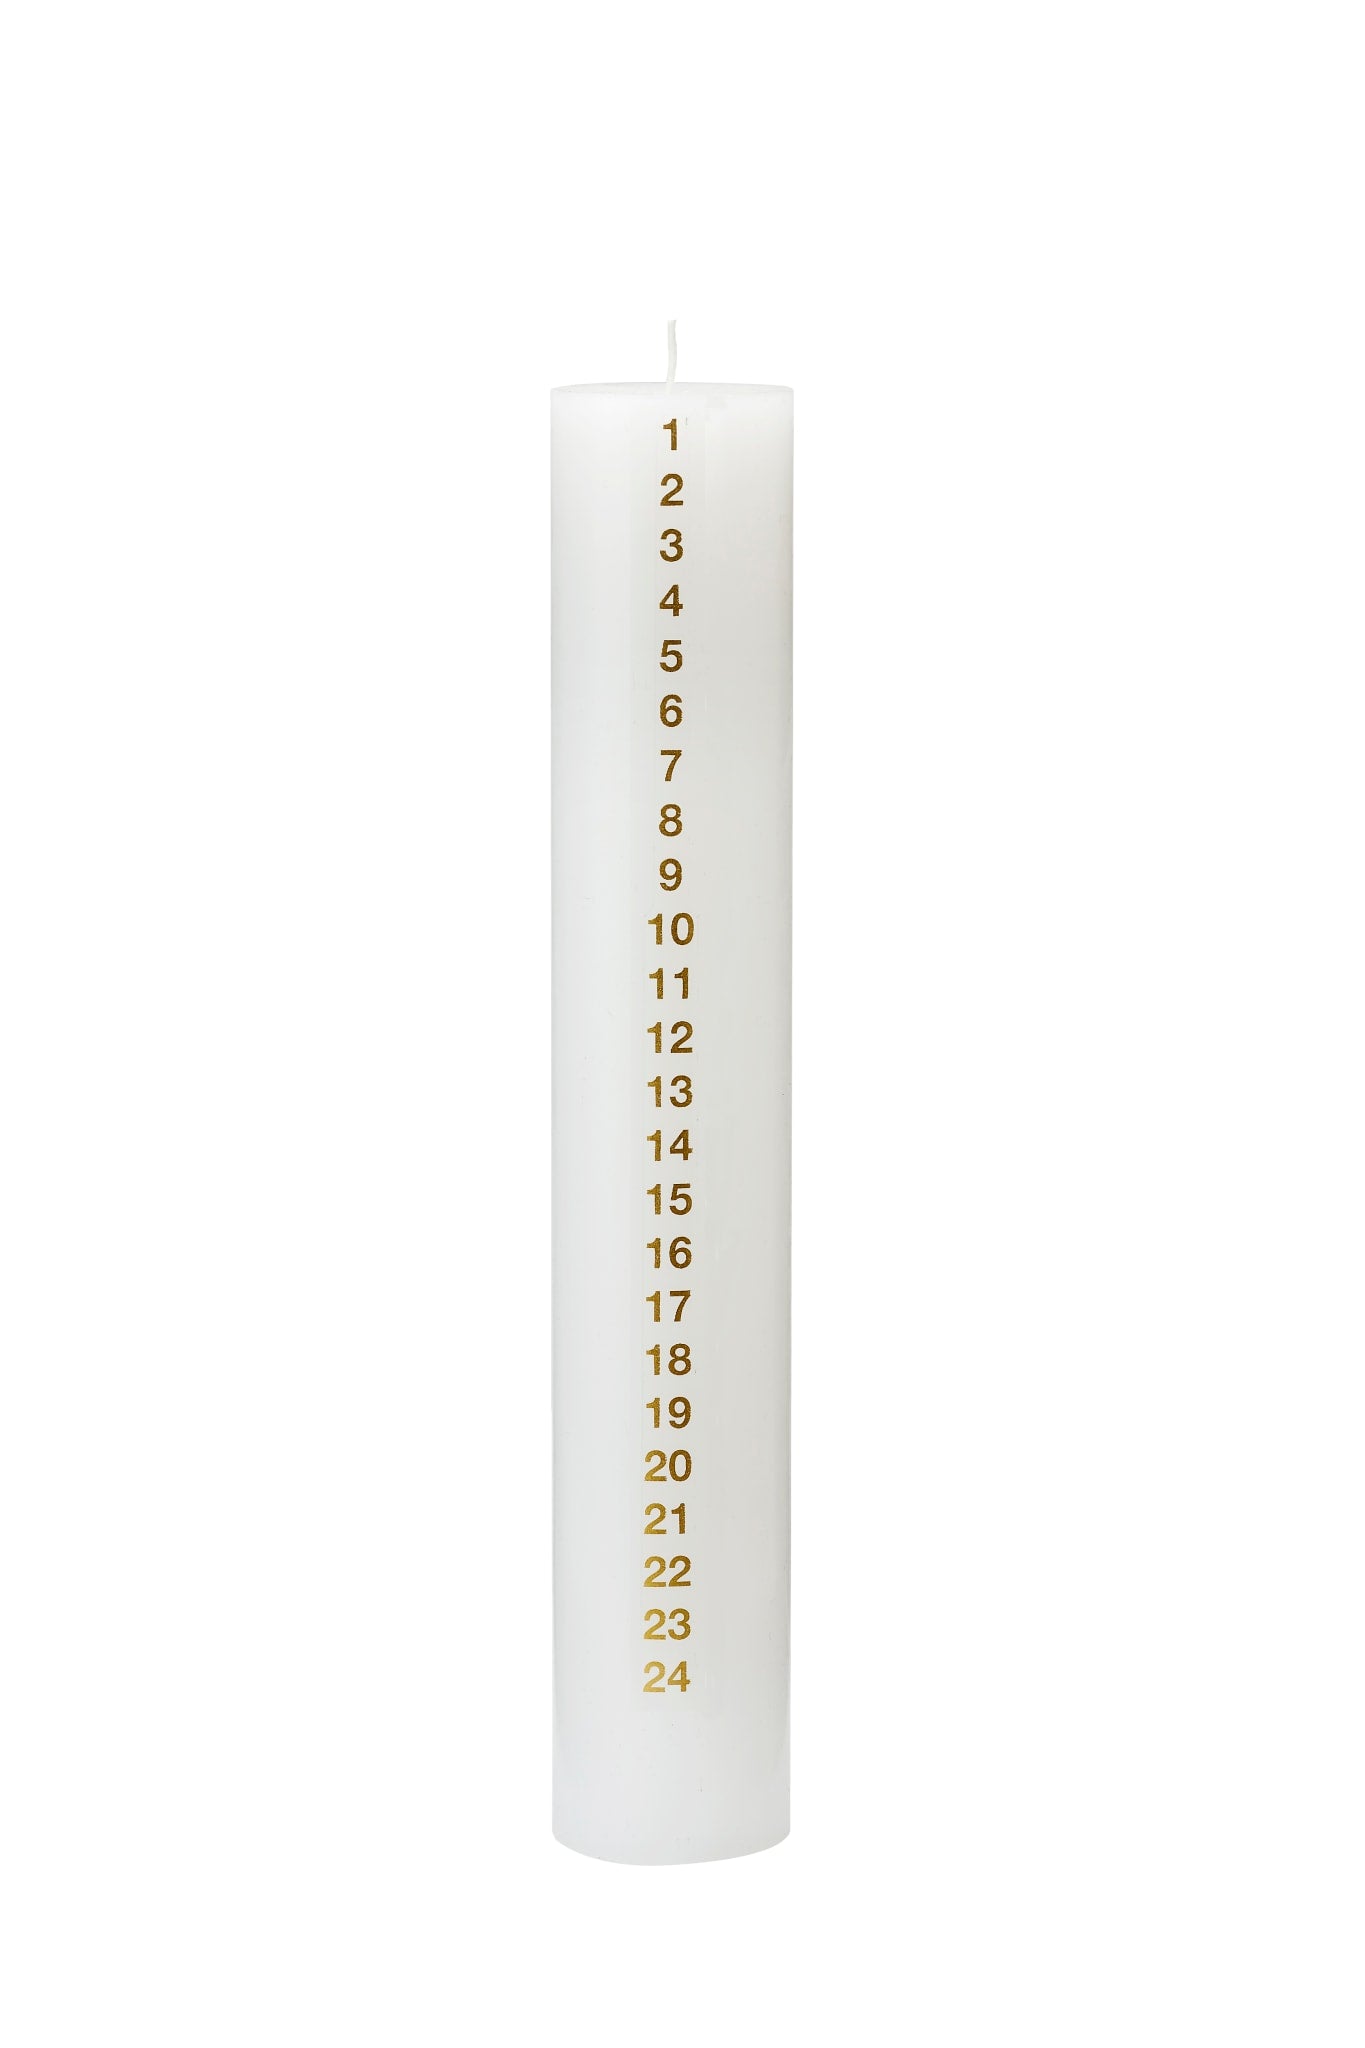 Dezemberkerze, 5 x 30 cm. RSPO Stearin. EN 15426 – Gold